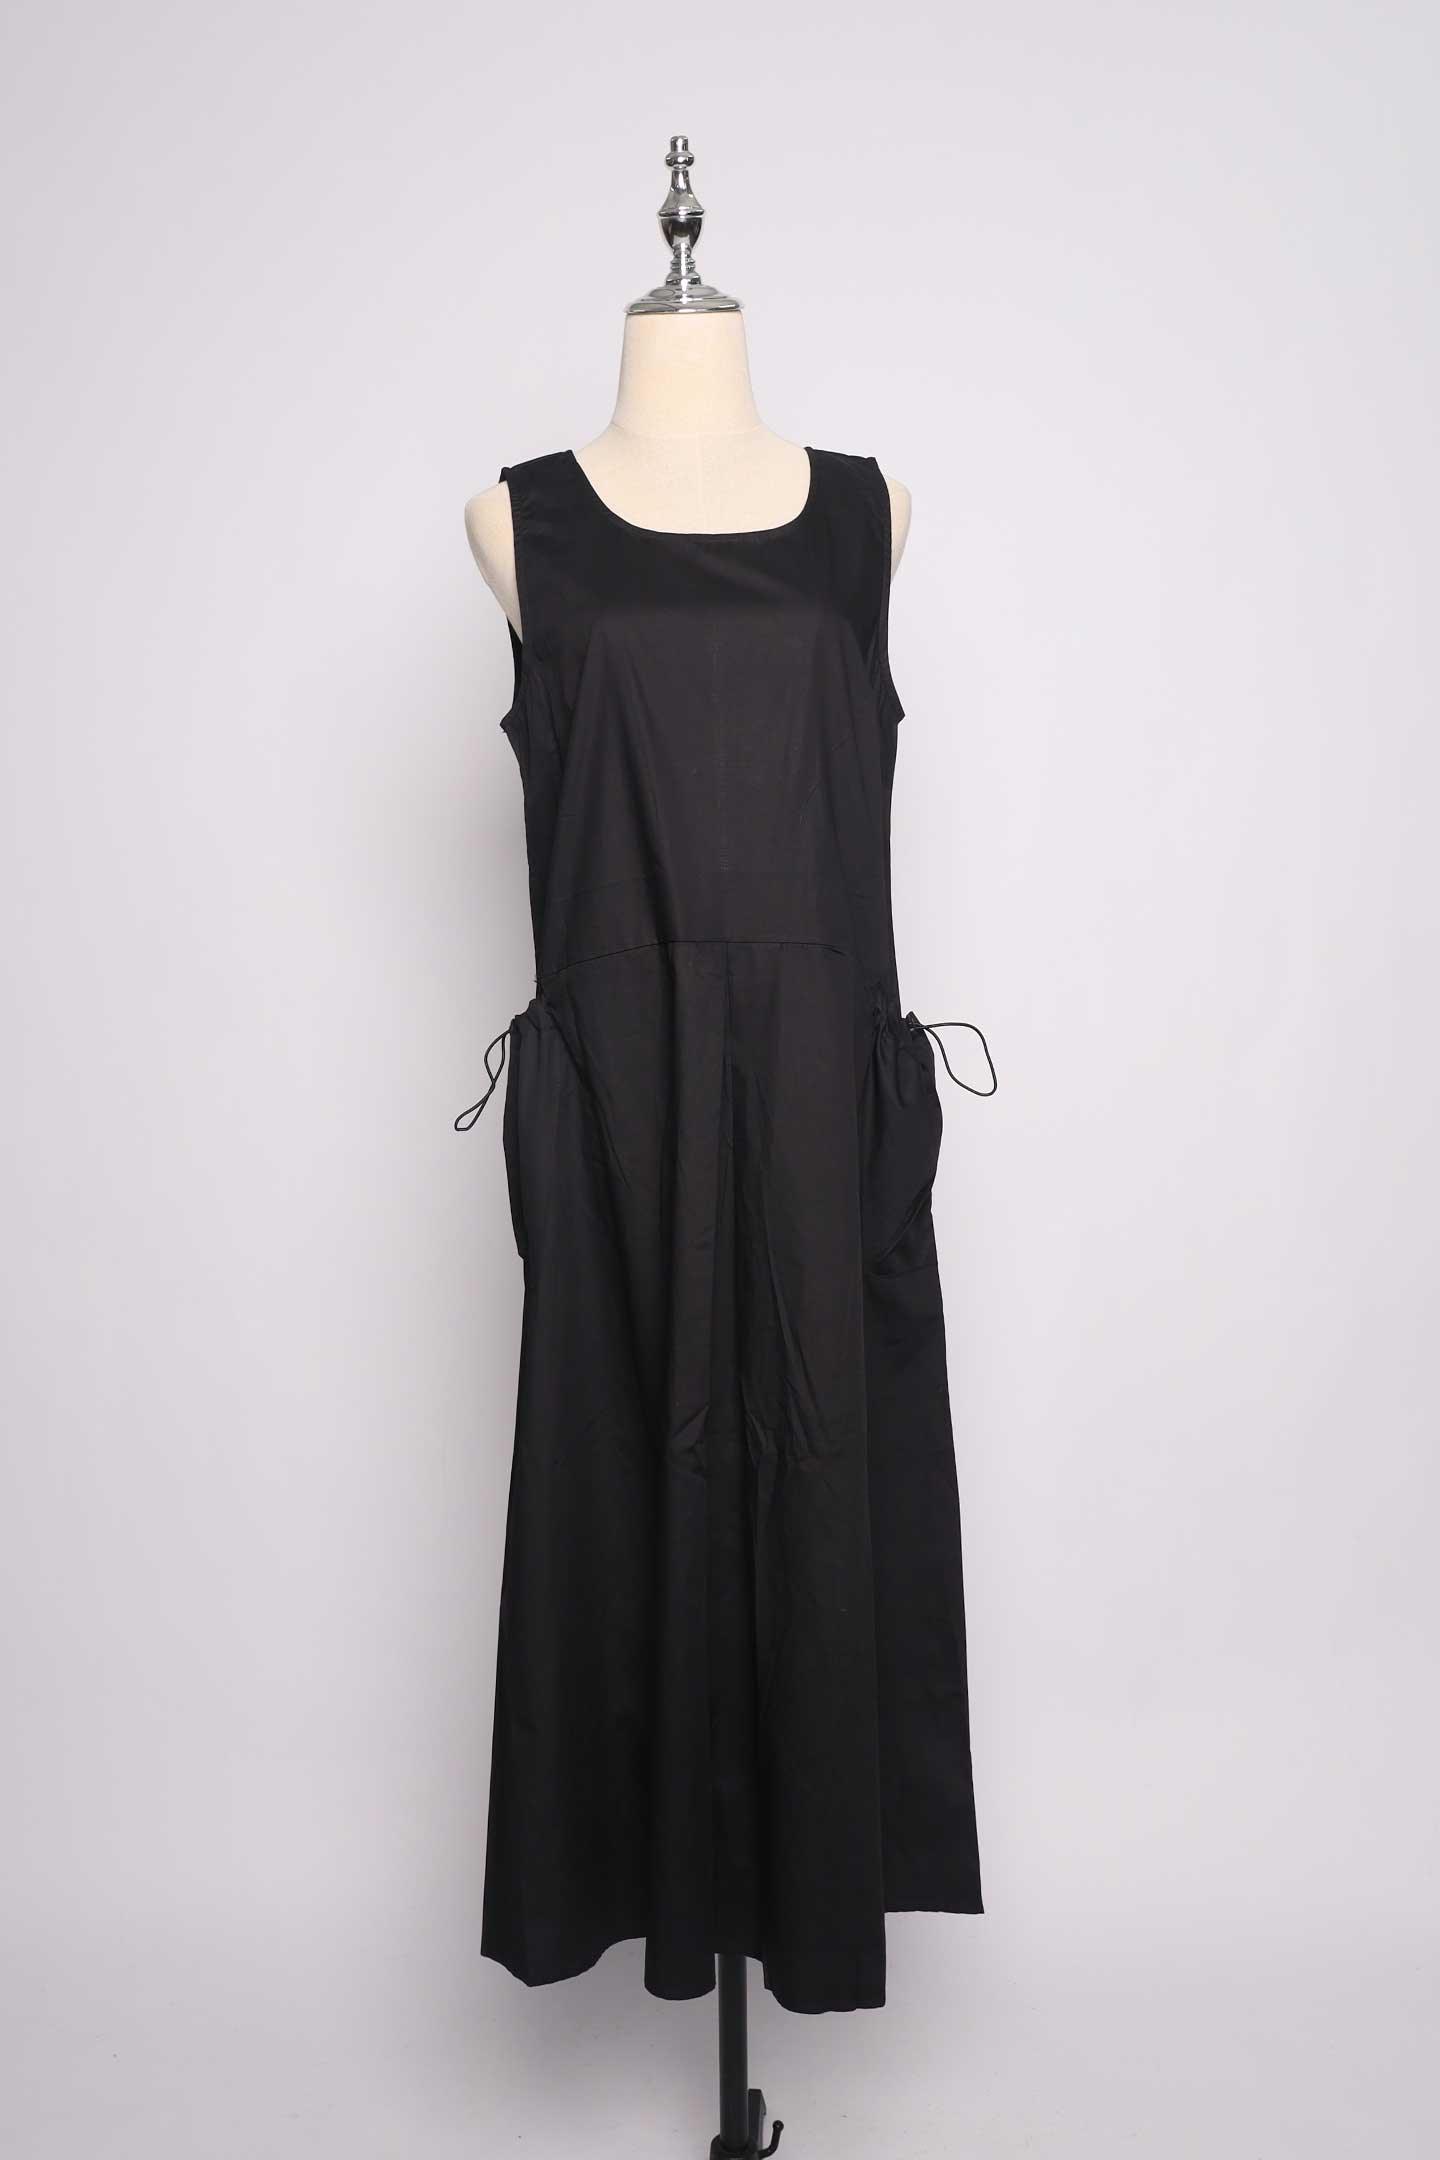 PO - Camille Dress in Black